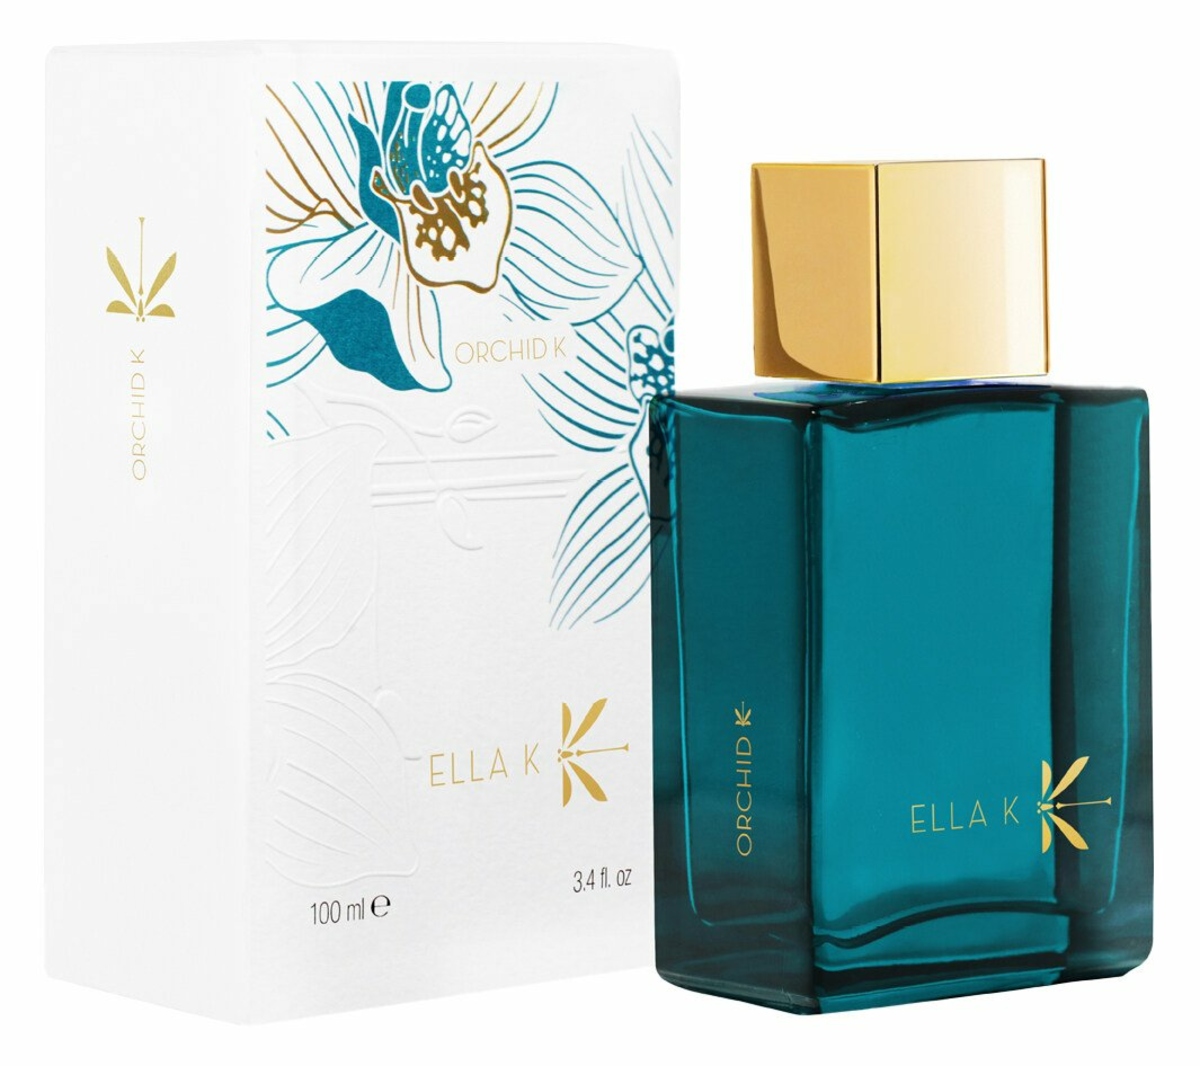 Orchid K - Ella K Parfums